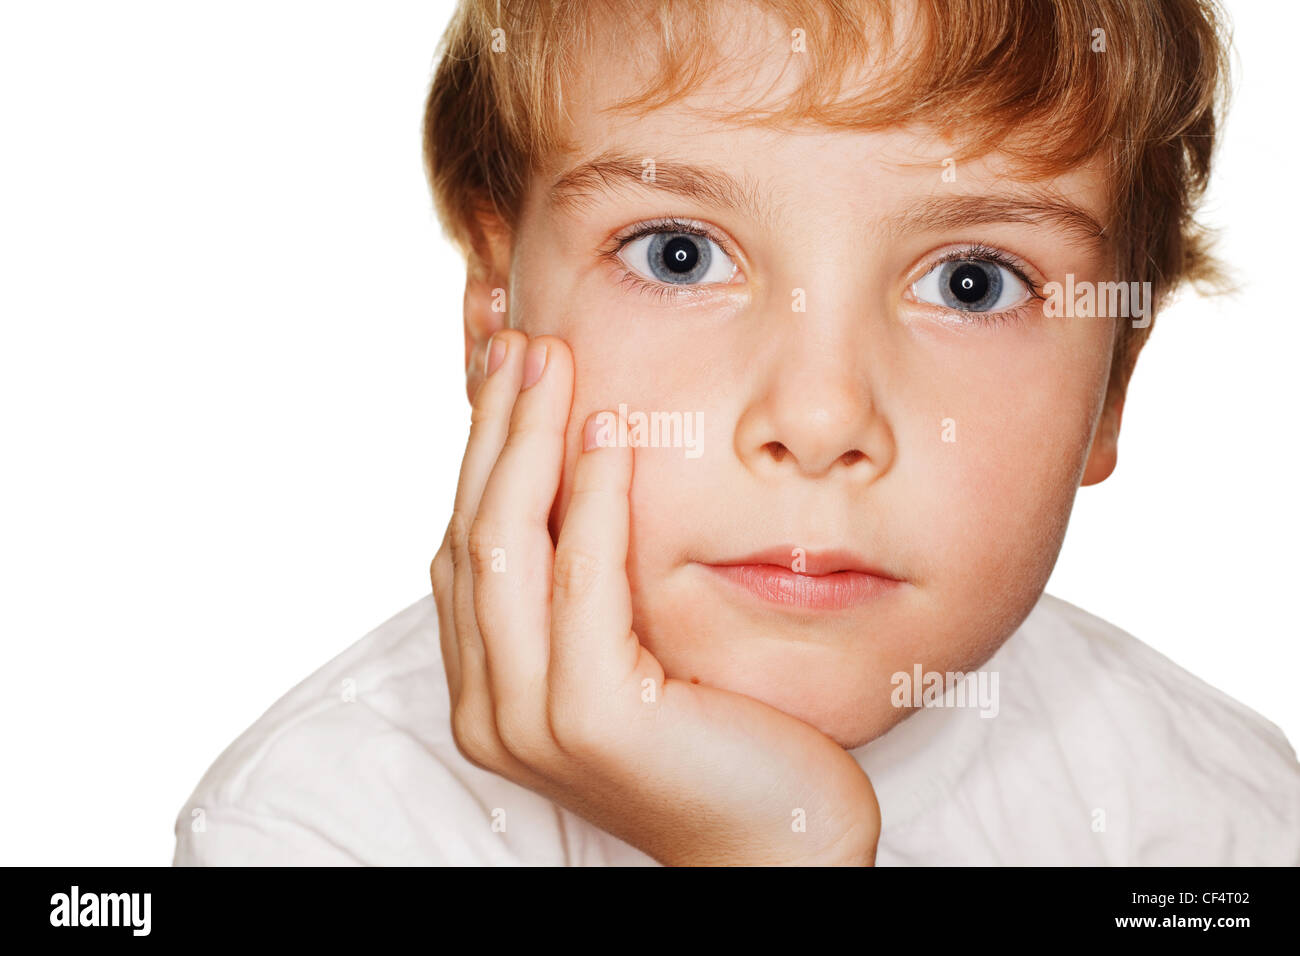 Porträt Kleinkind in einem weißen T-shirt Fotostudio, Kopf auf der Seite. Ringblitz Stockfoto